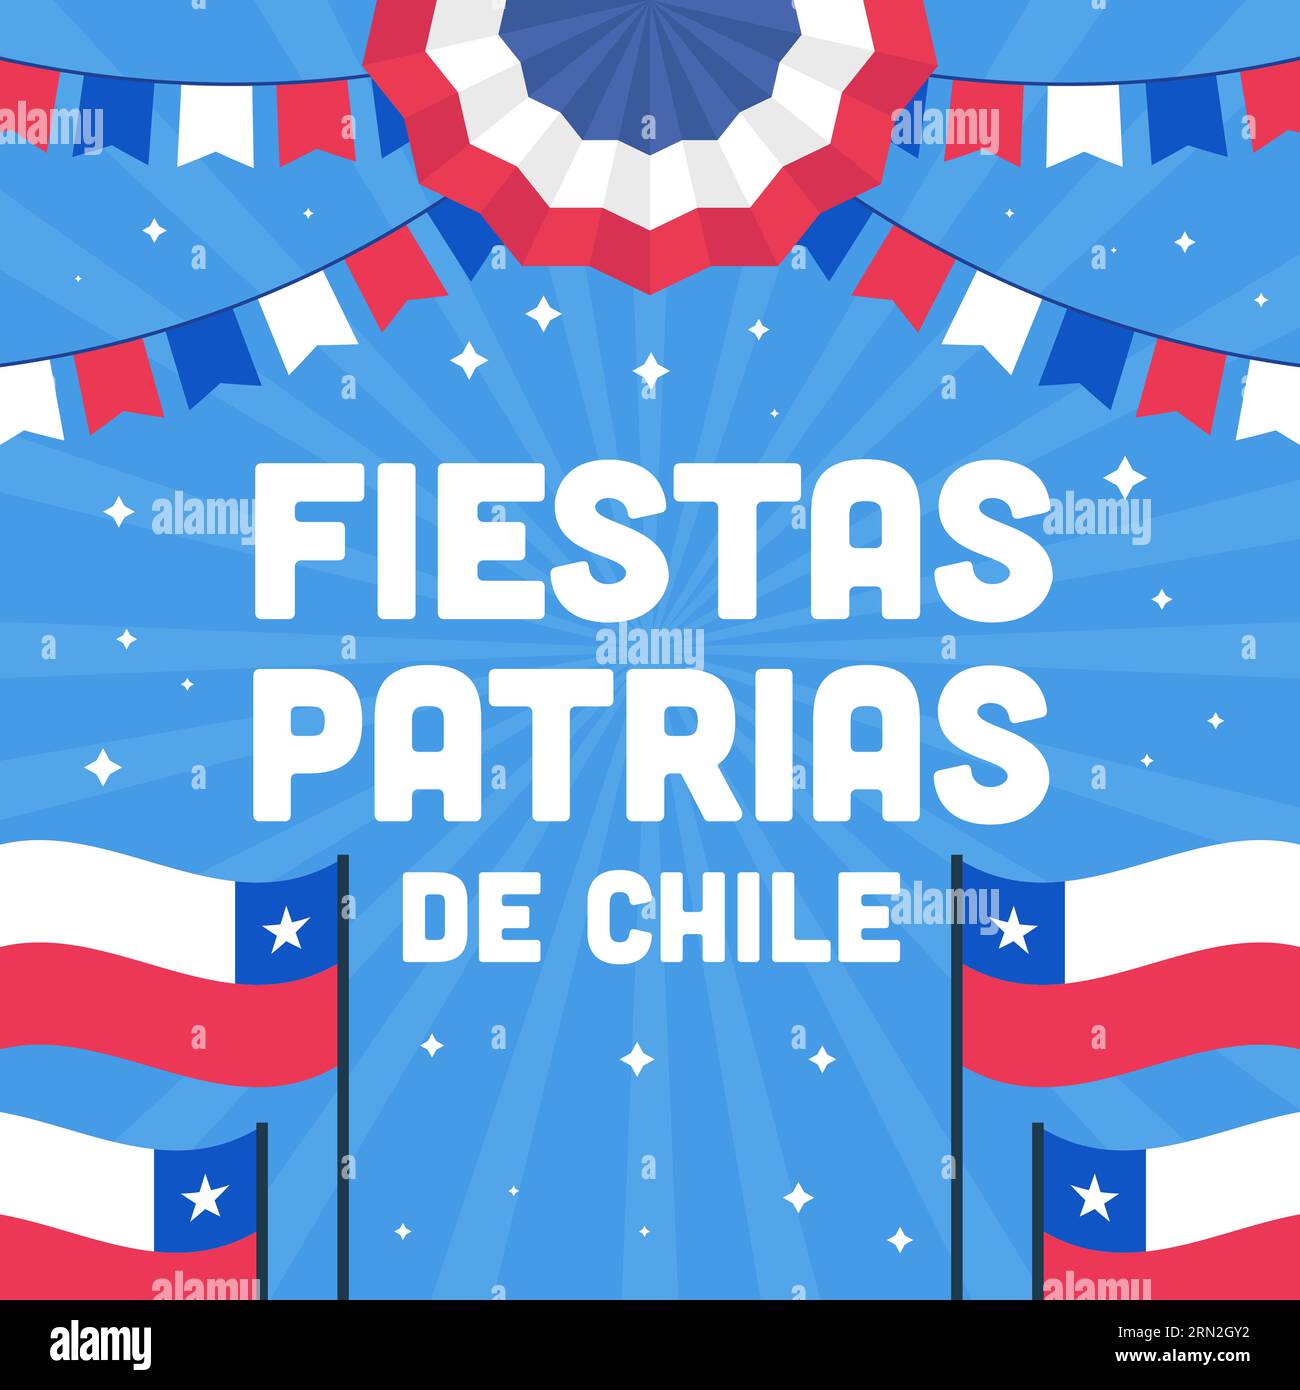 fiestas patrias de chile illustration vector design Stock Vector